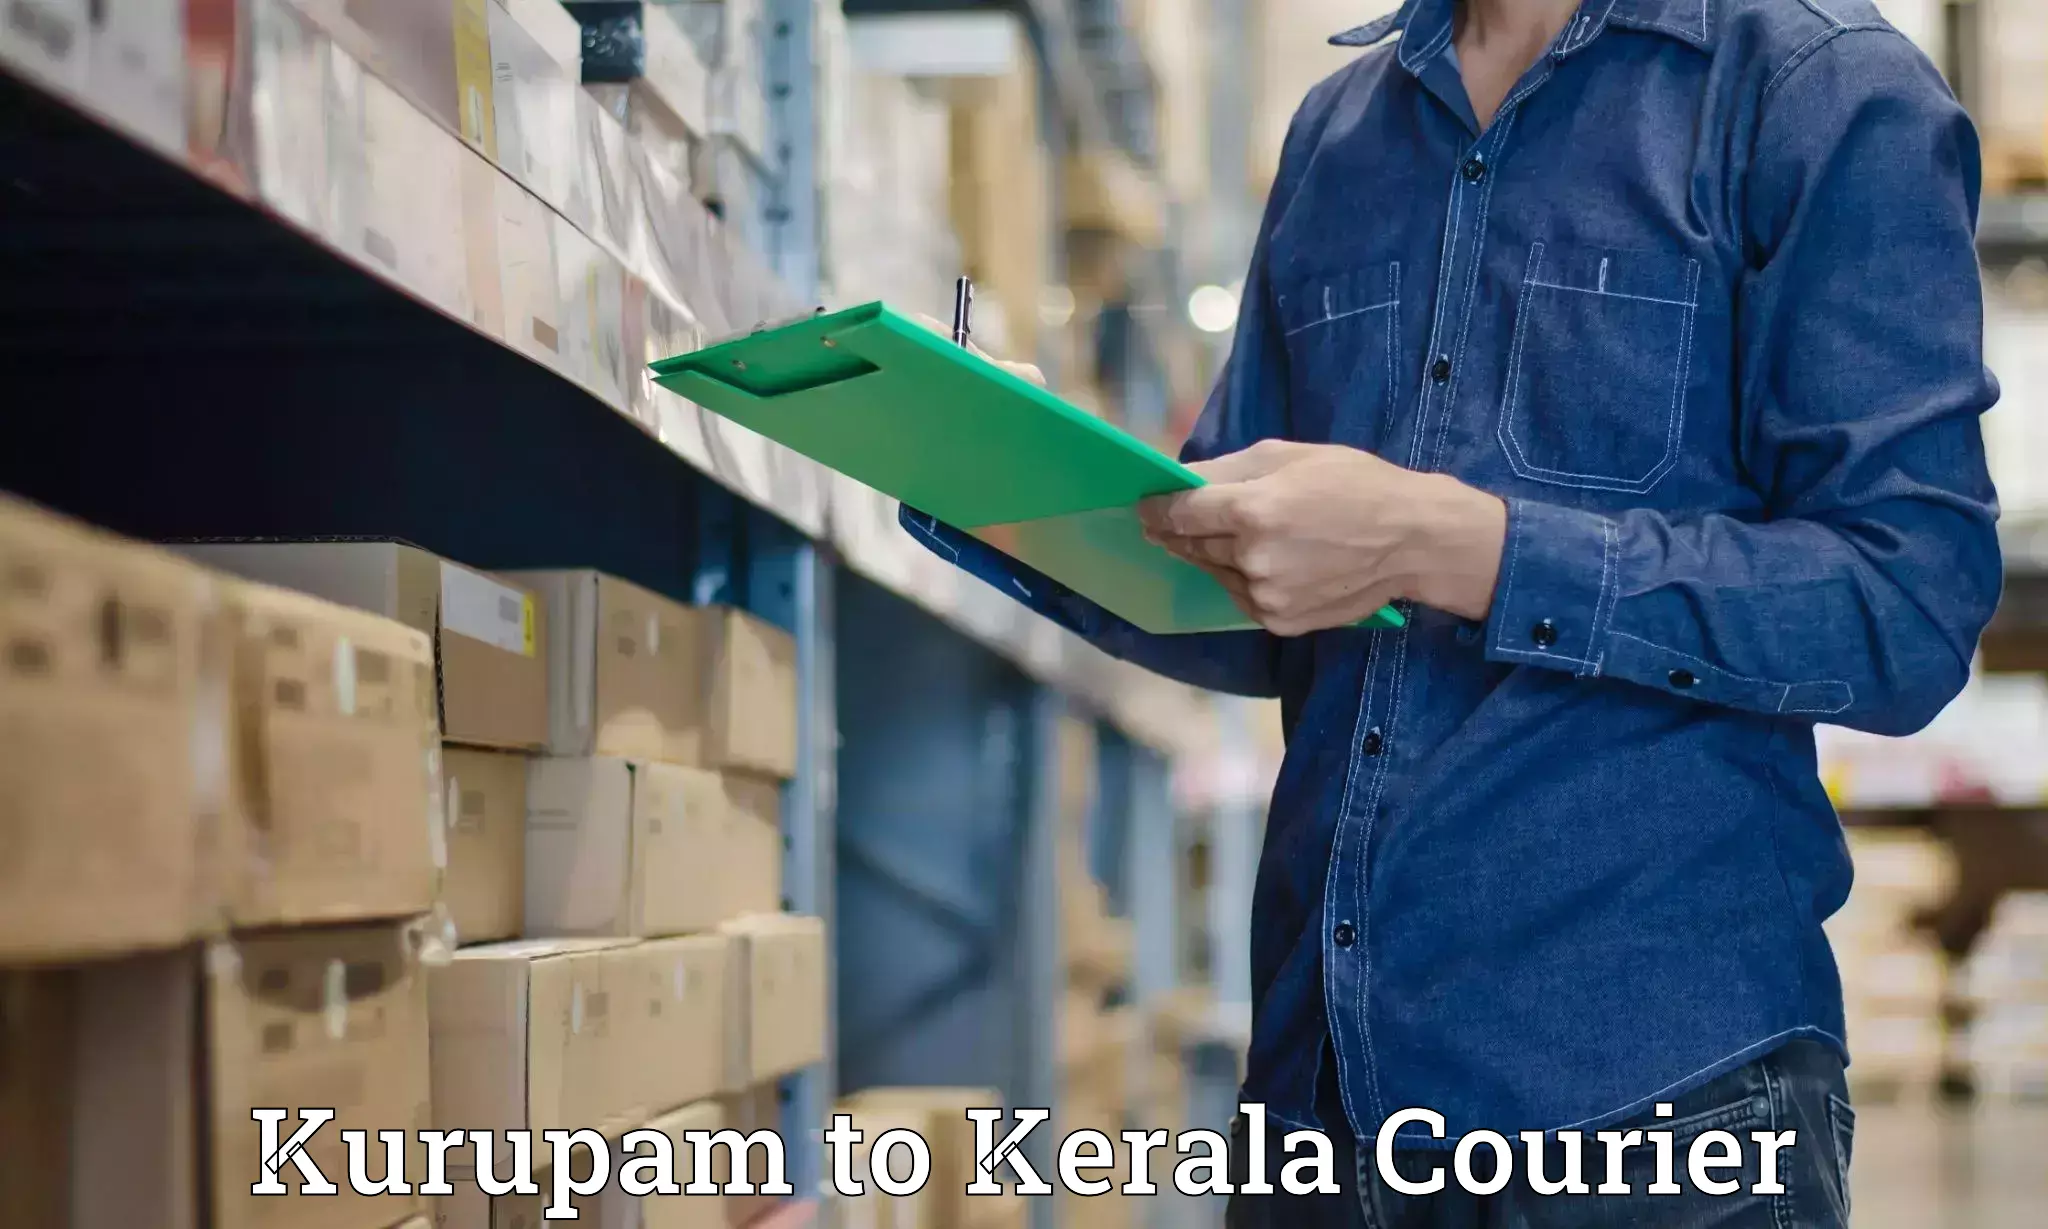 24/7 courier service Kurupam to Kerala